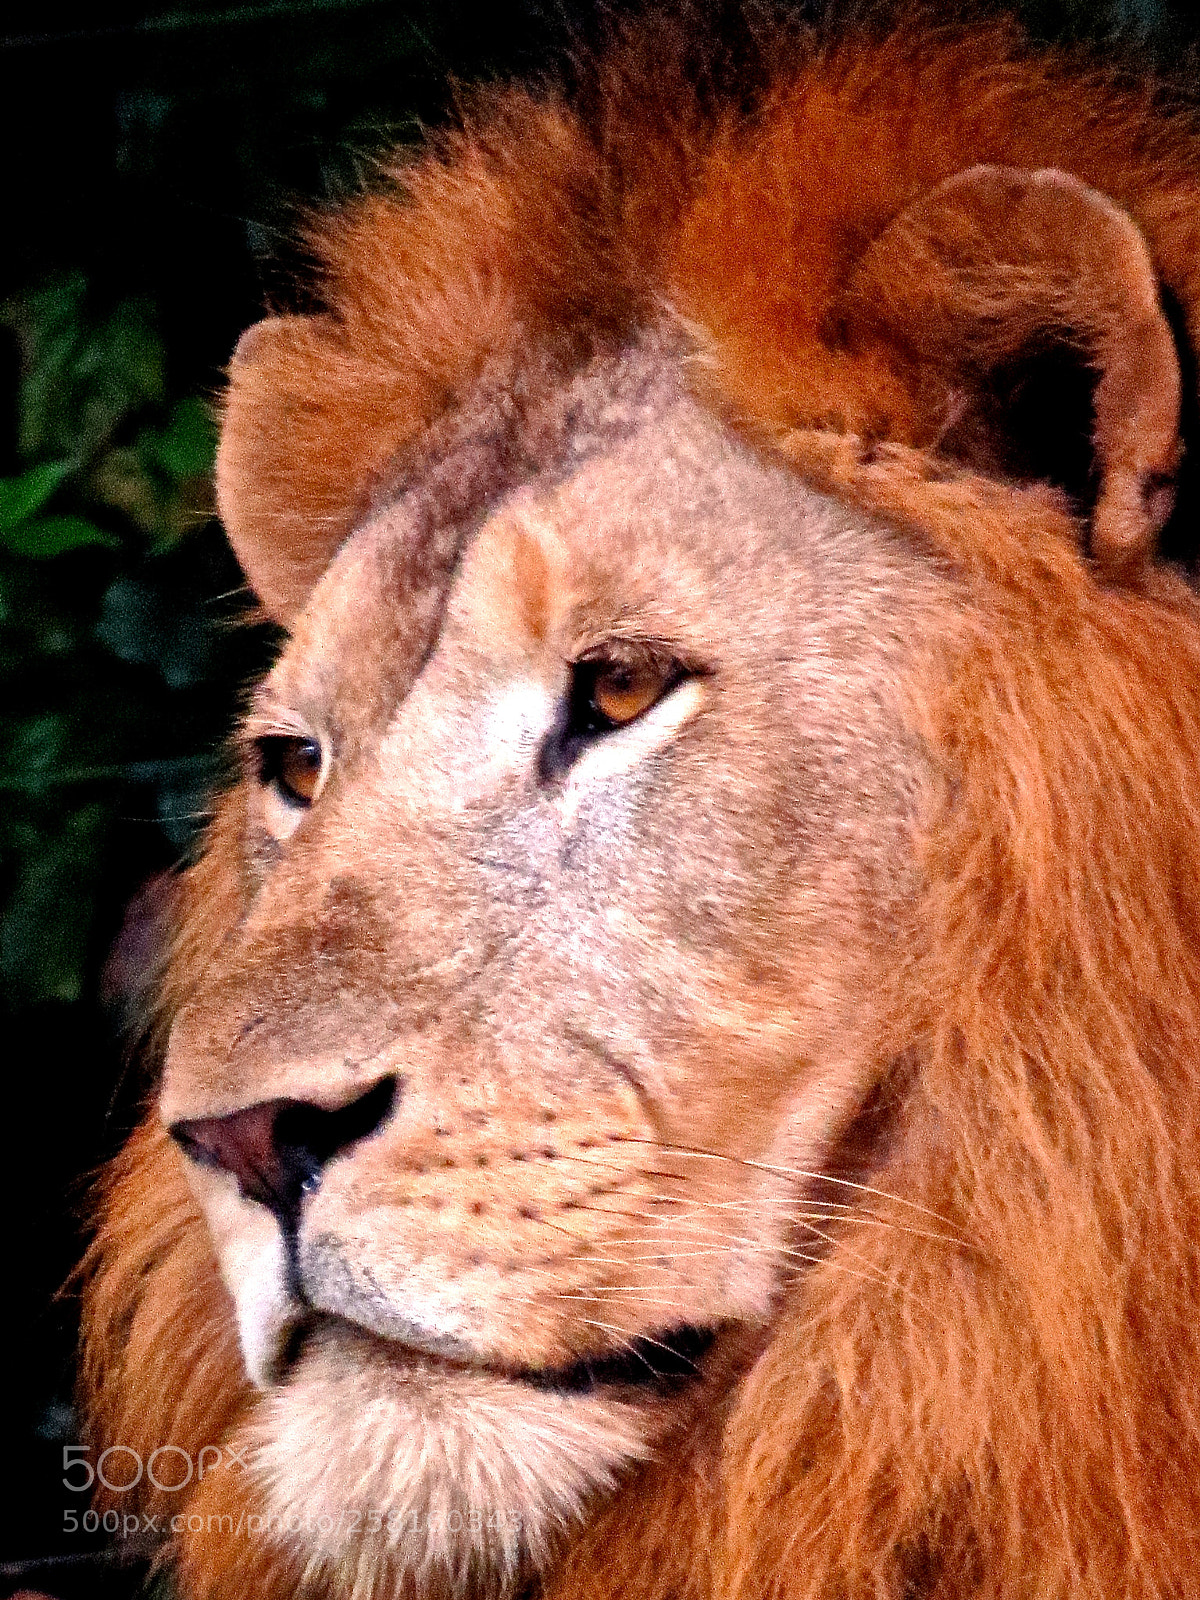 Canon PowerShot SX50 HS sample photo. Lion face closeup photography